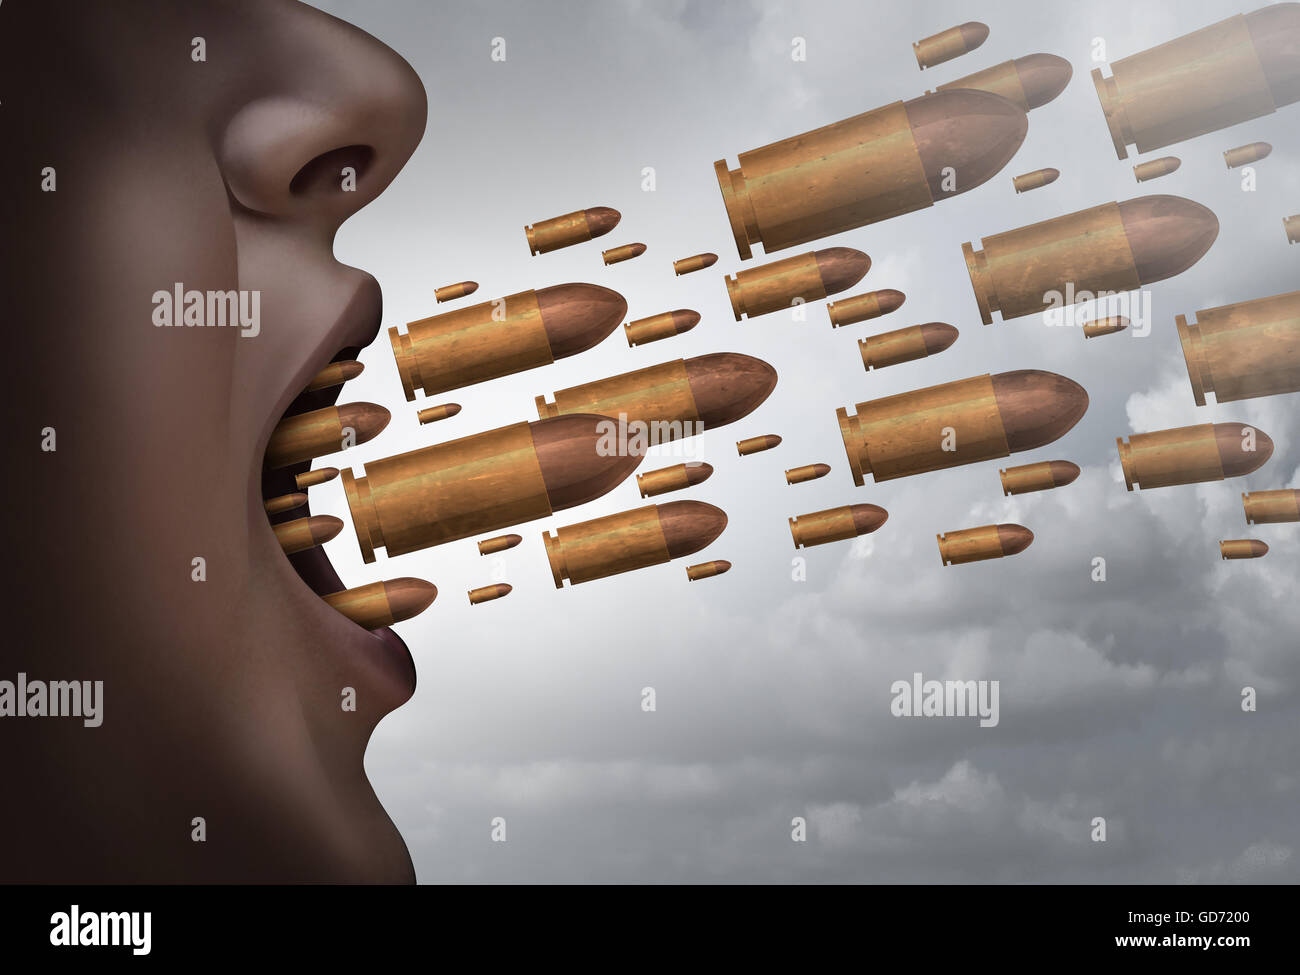 Kämpfen Sie mit Worten Sozialausgabe Konzept als eine Person mit Kugeln fliegen aus dem Mund als Metapher für ausgeprägte kommunikative und aggressiv mit 3D Abbildung Elemente schreien schreien. Stockfoto